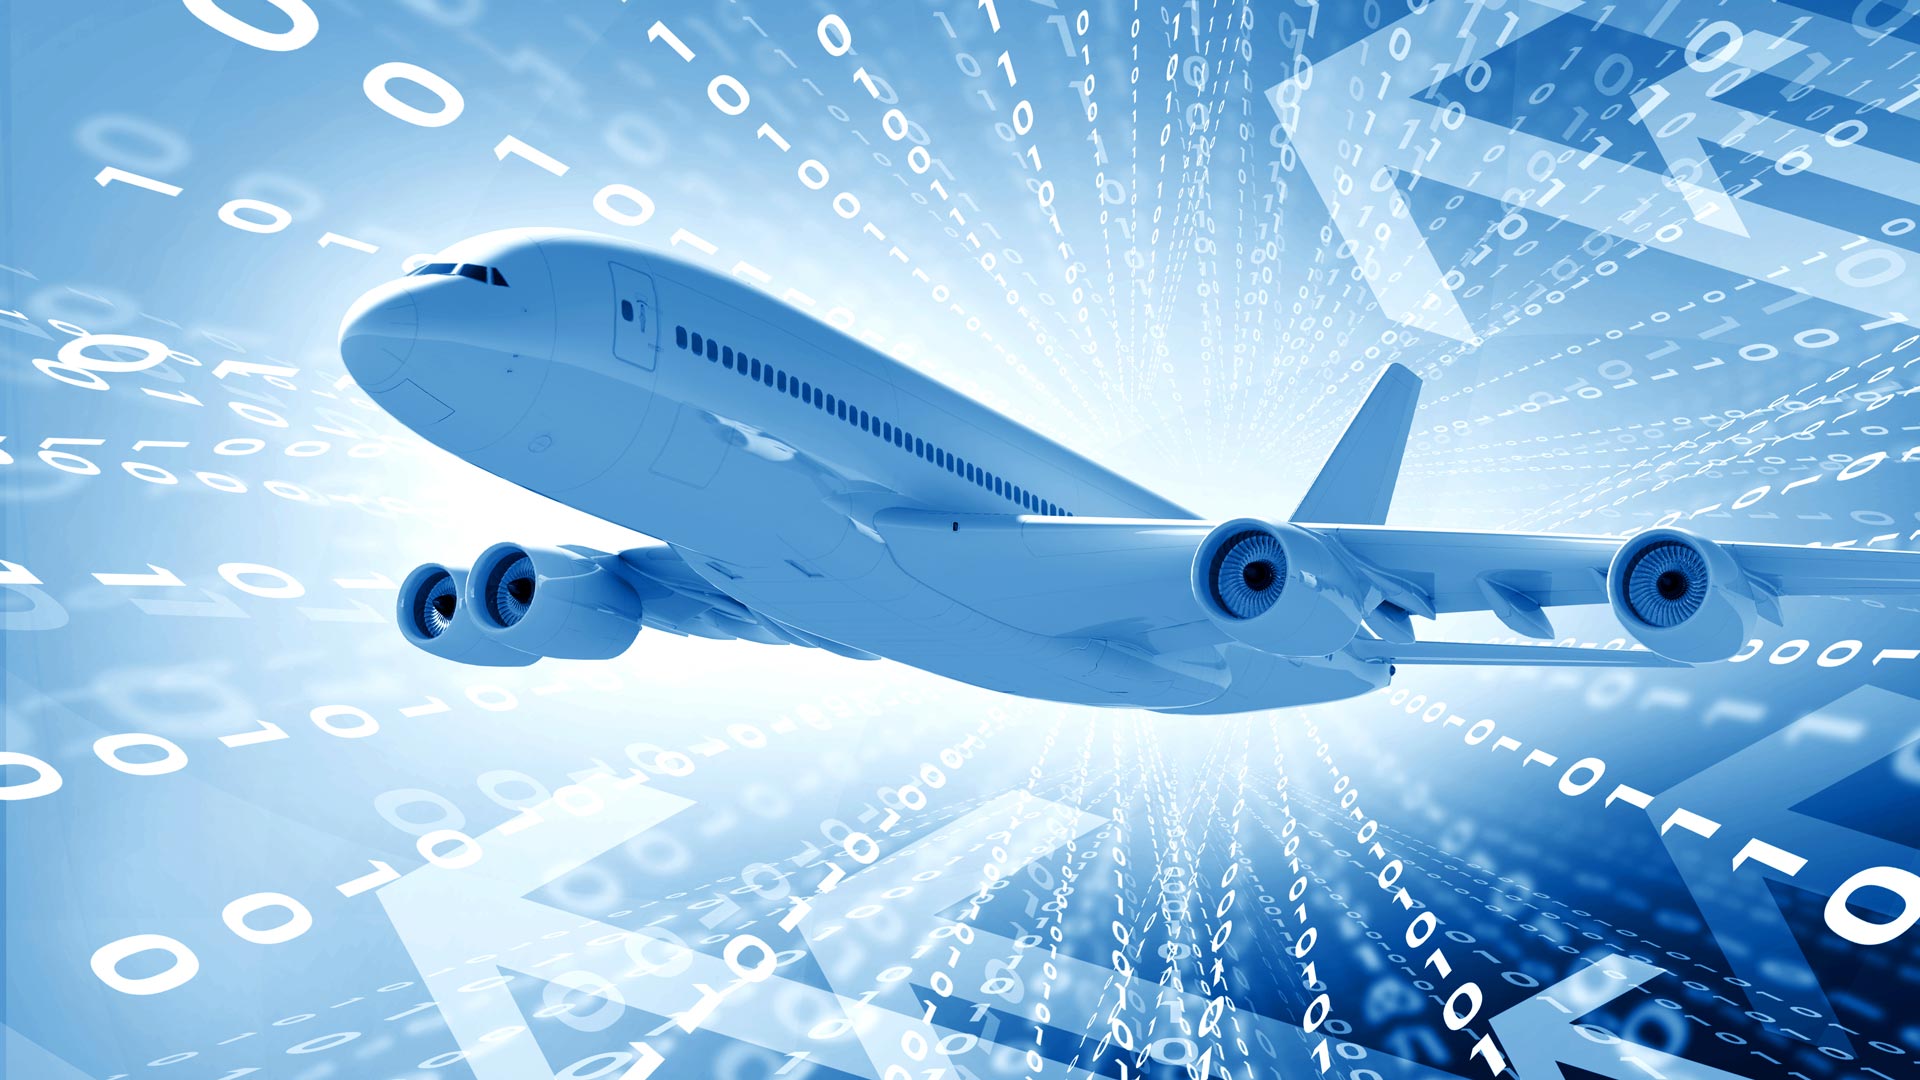 Организаторы Digital Aviation and Travel Forum 2023 озвучили главные вопросы деловой программы